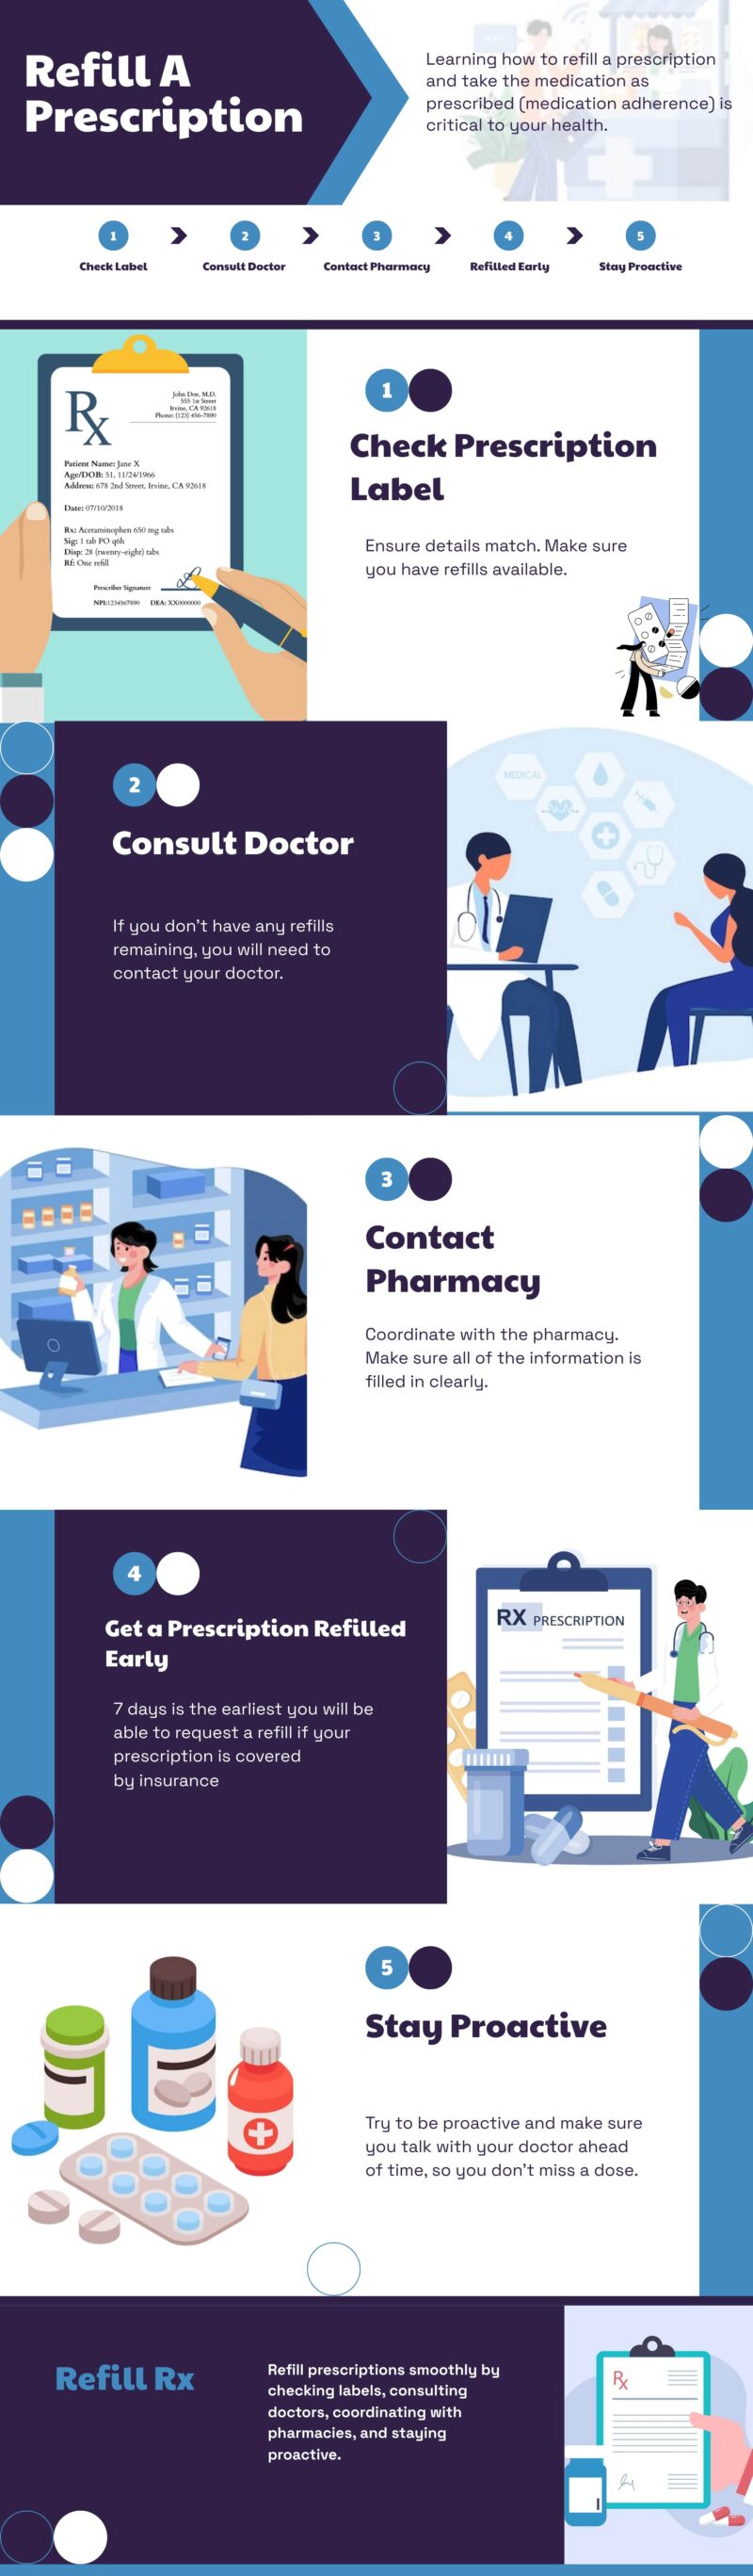 Refill A Prescription infographic